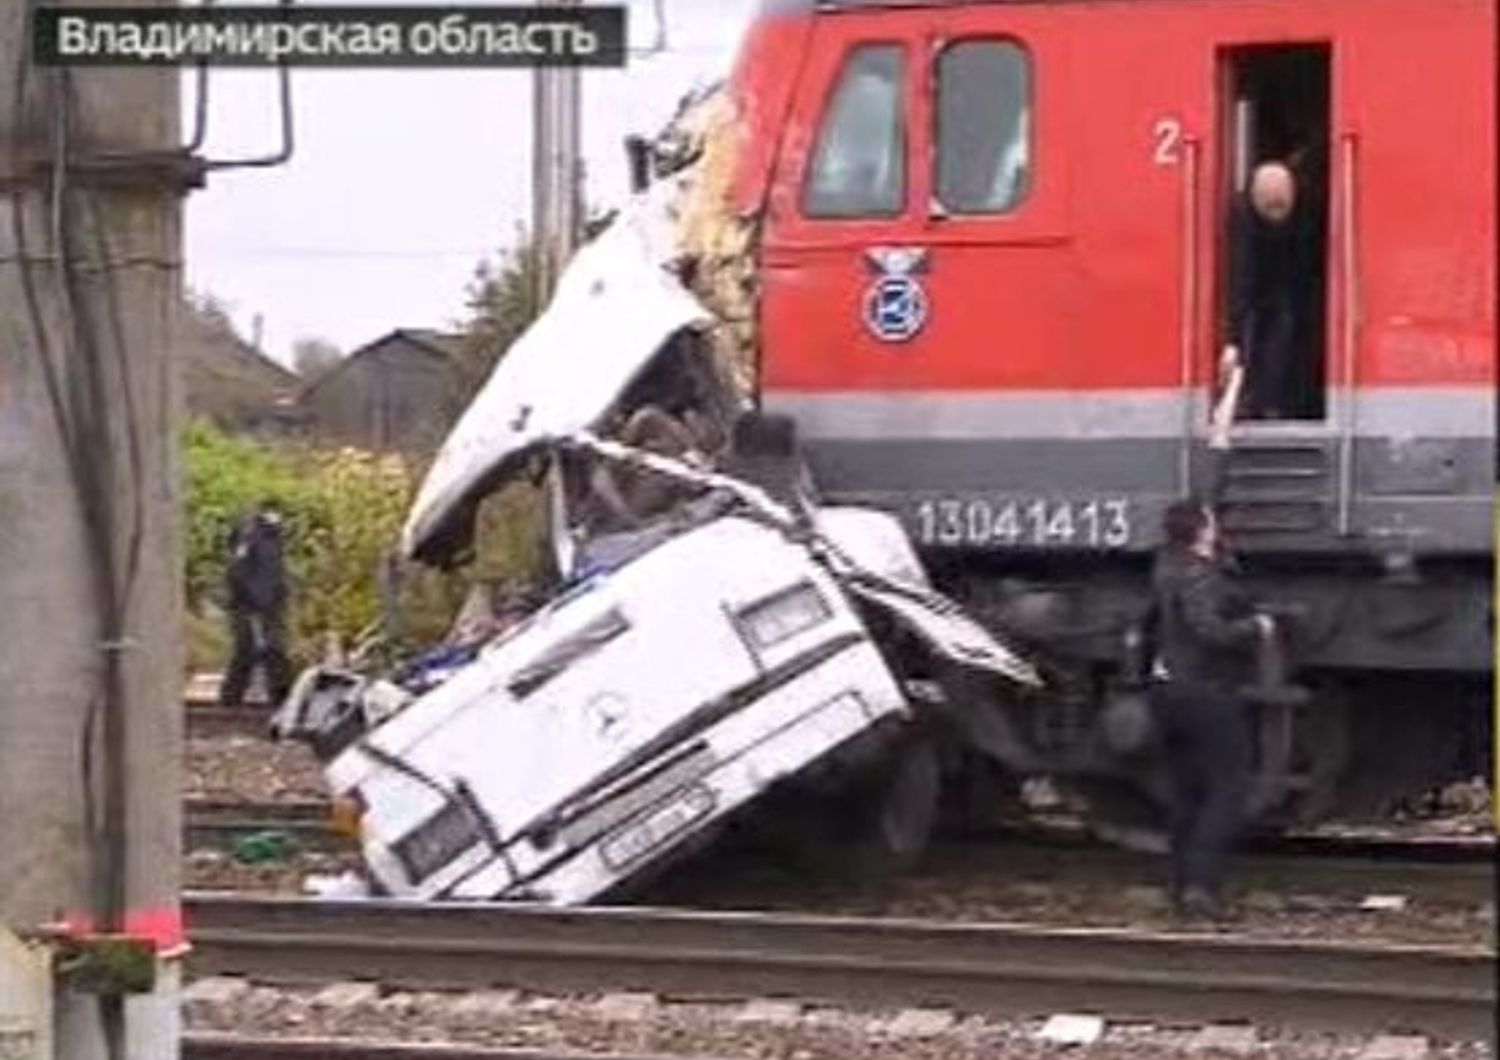 Scontro treno-bus in Russia - immagine da Rossiya 24 news channel